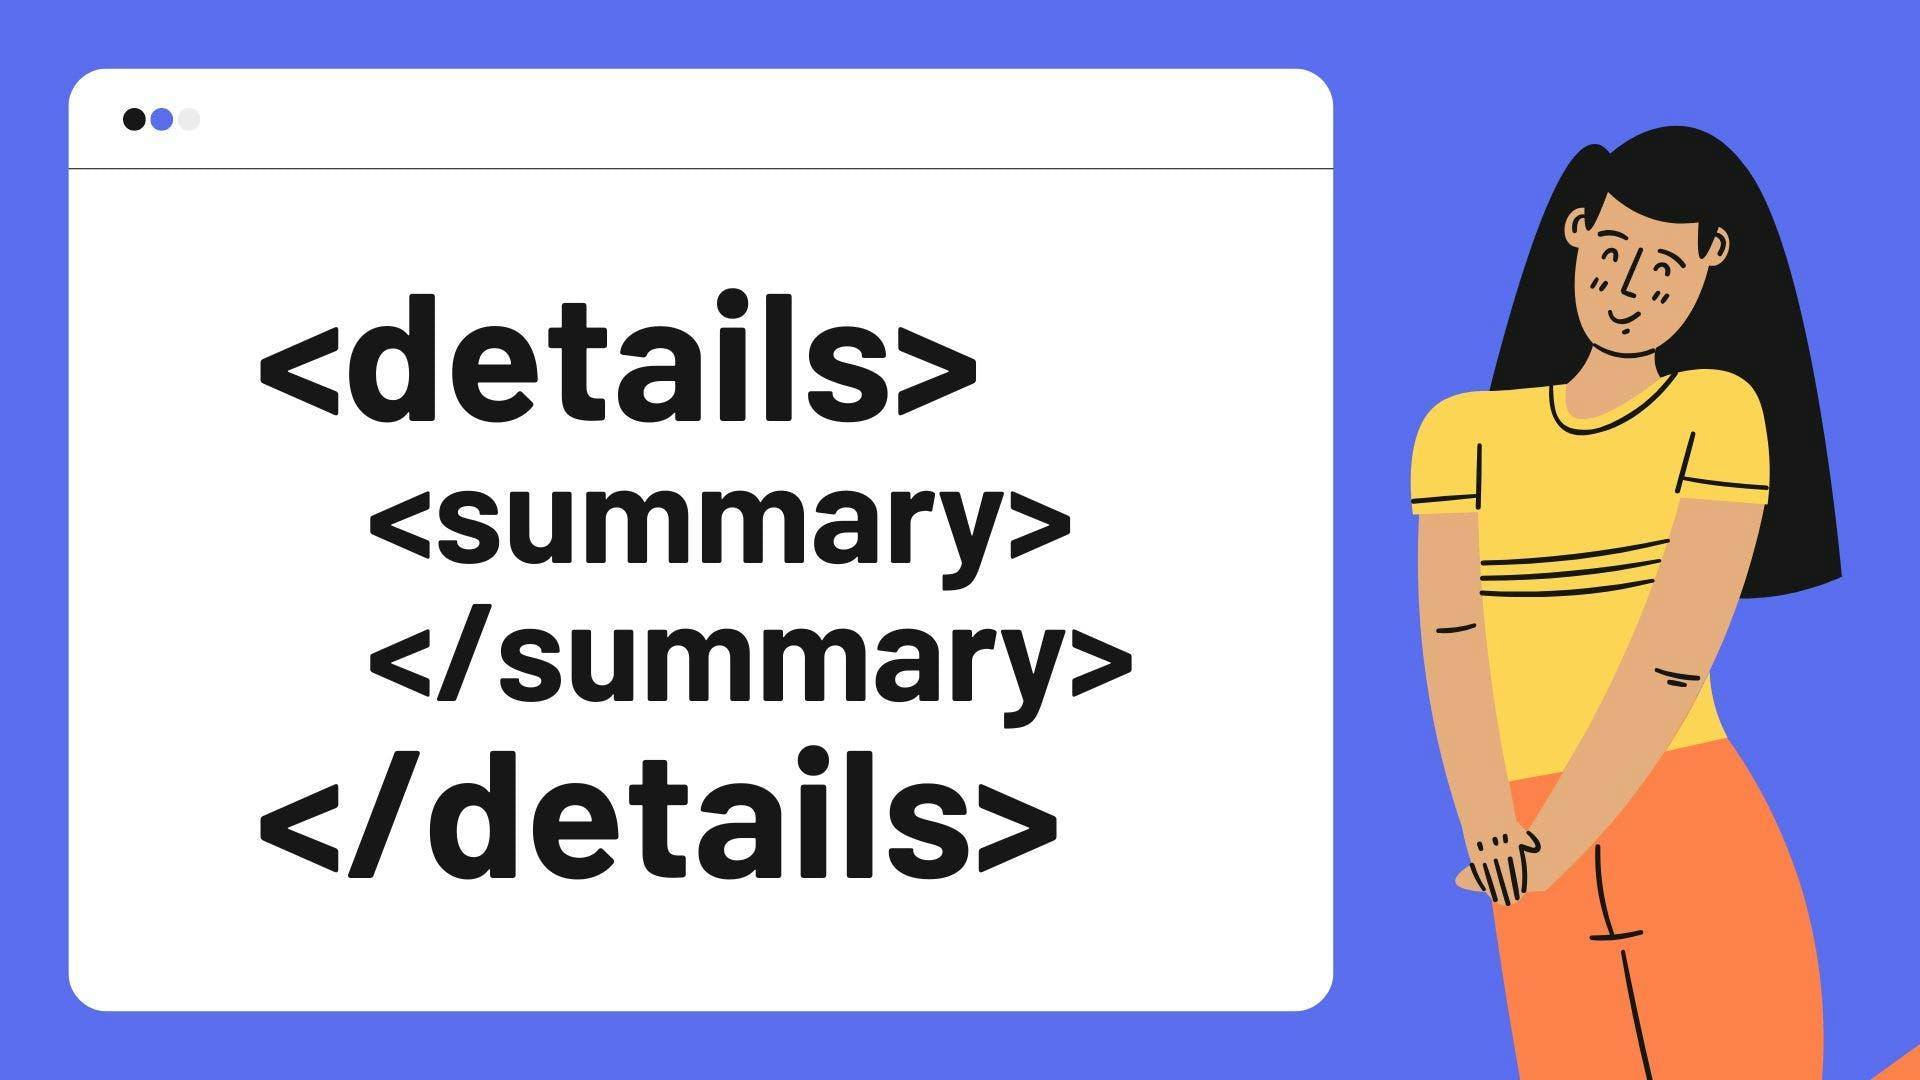 Como estilizar os elementos "details" e "summary" com CSS?